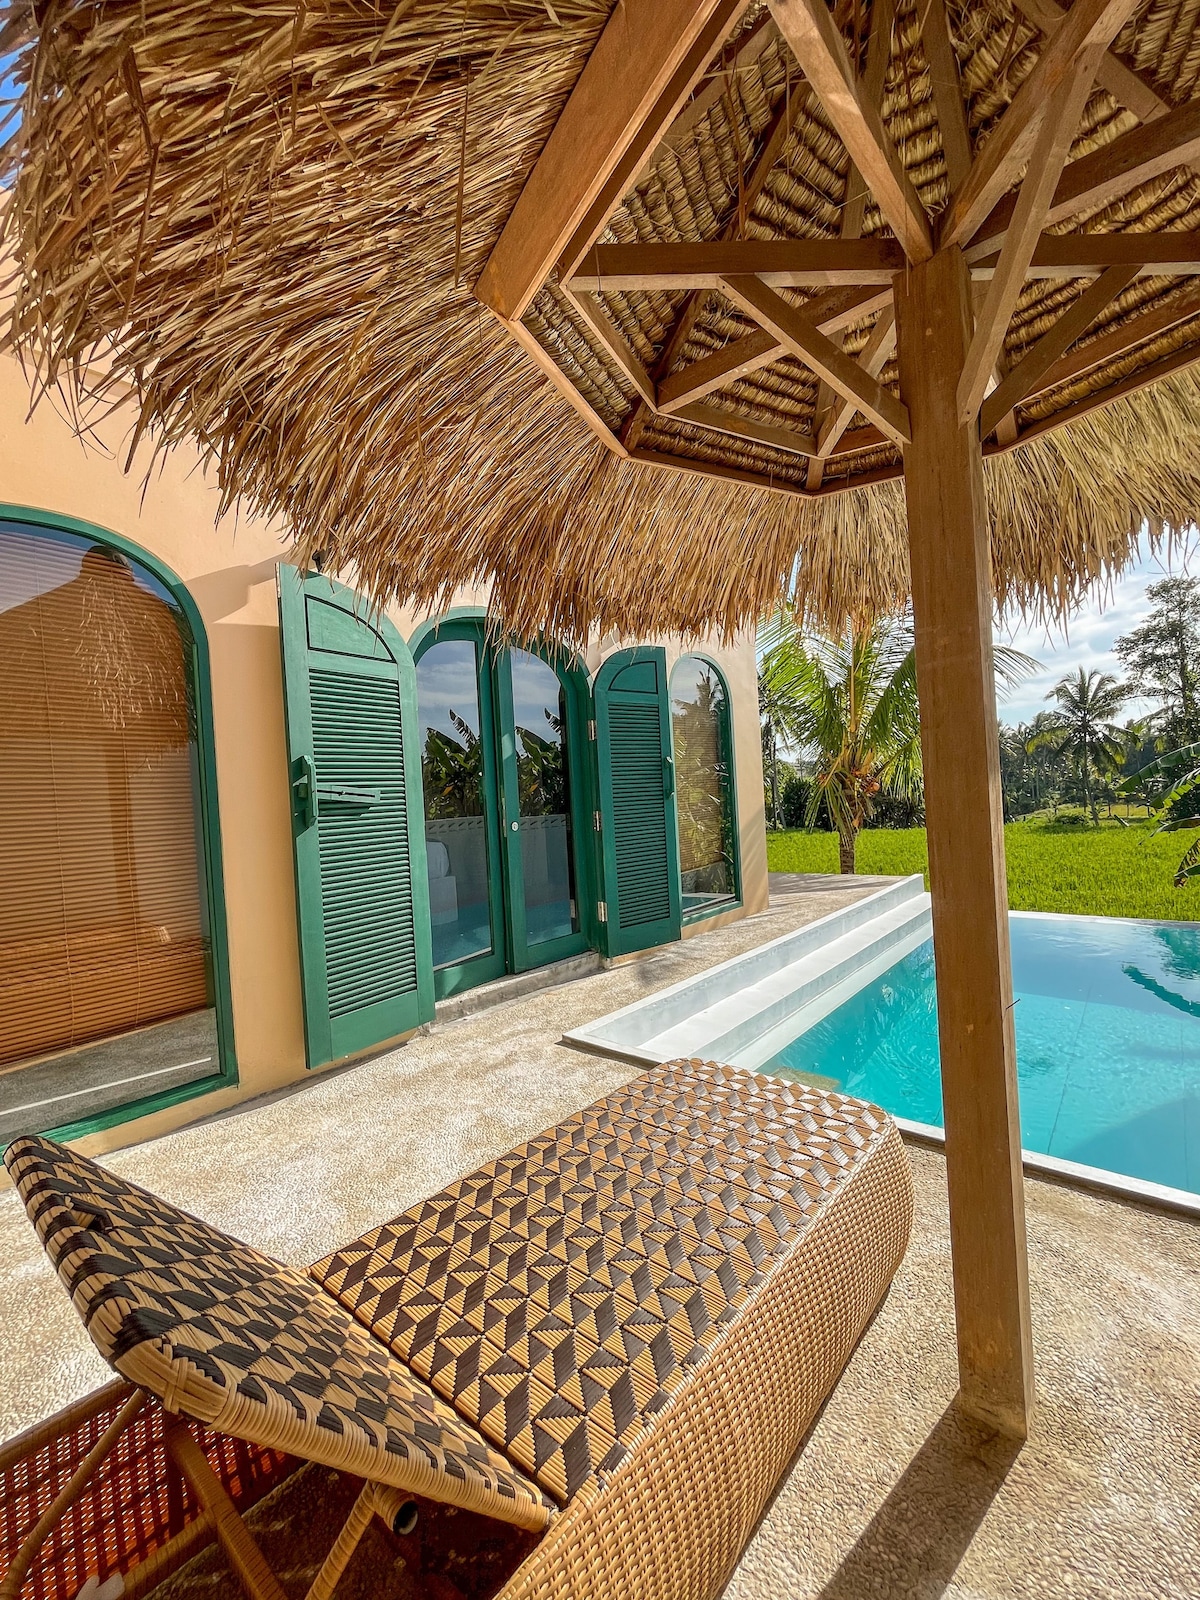 Casa de Joan -仅限成人入住的私人泳池别墅